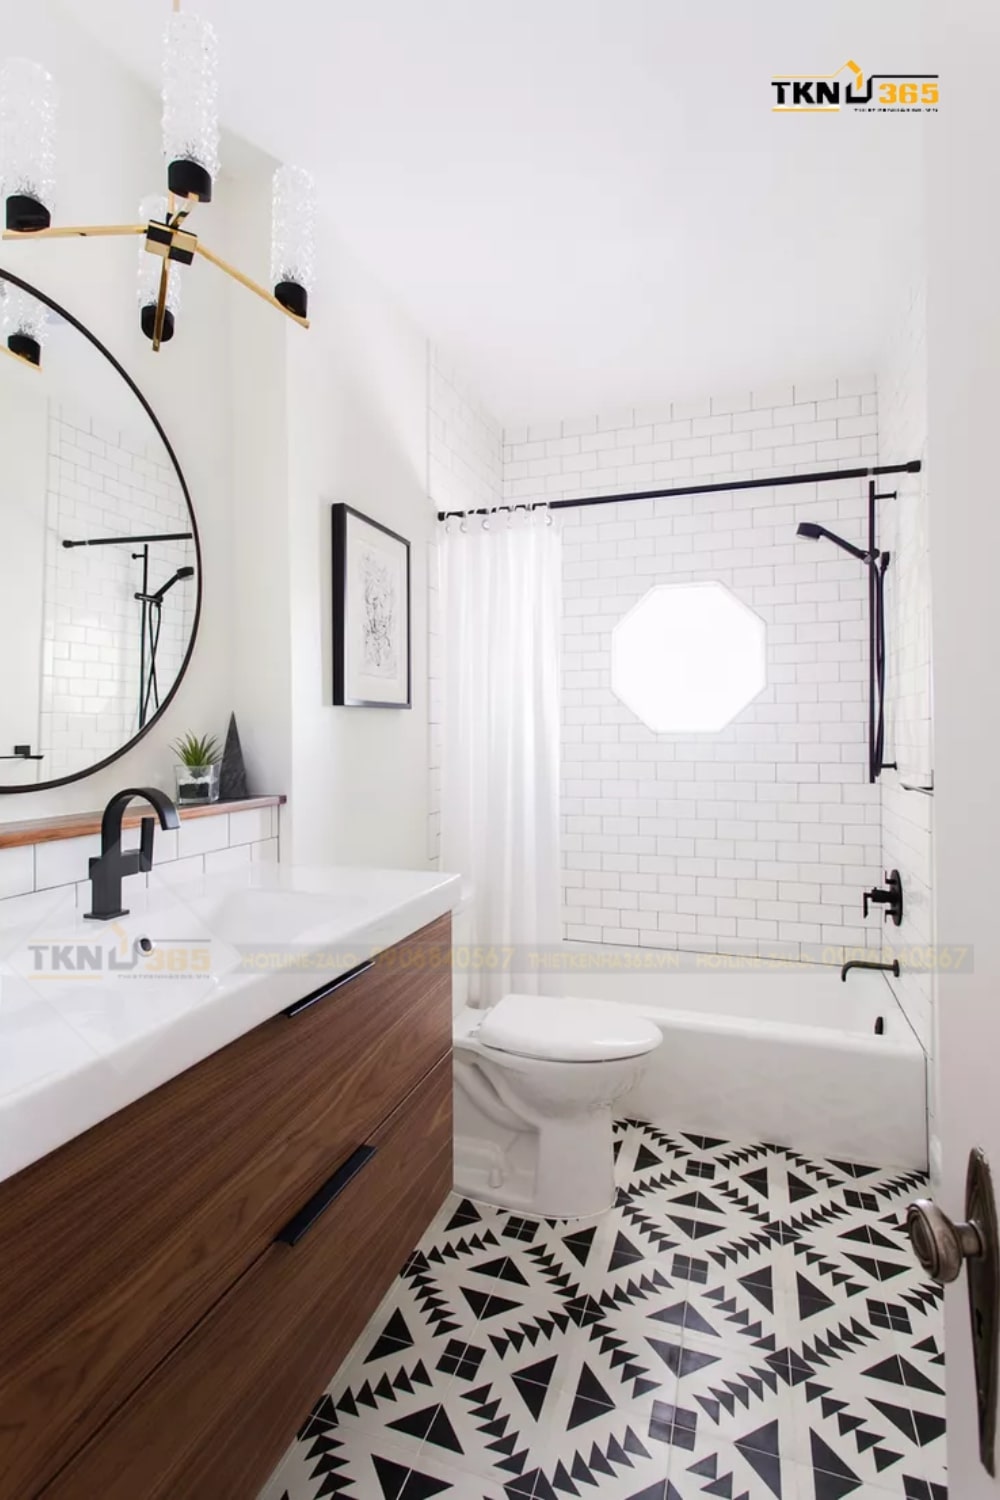 Phòng tắm này được thiết kế với các tông màu trắng và đen, điểm nhấn nằm ở nền gạch với hoa văn độc đáo